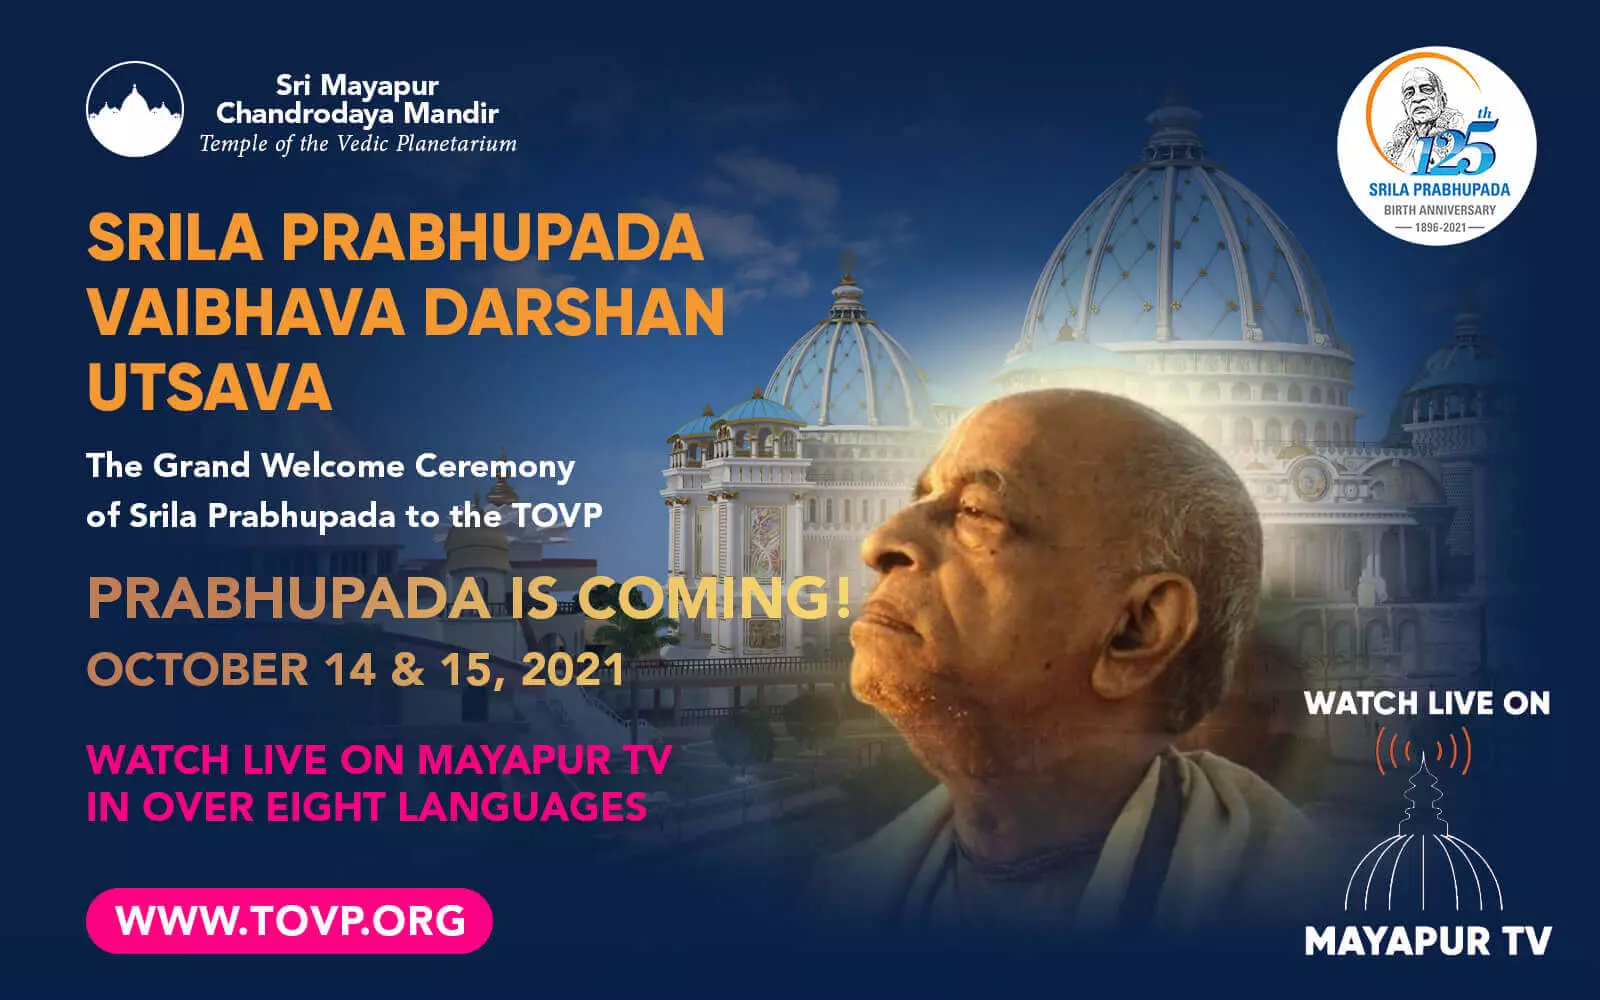 帕布帕达即将来到 TOVP！在 Mayapur TV 上观看直播，10 月 14 日至 15 日